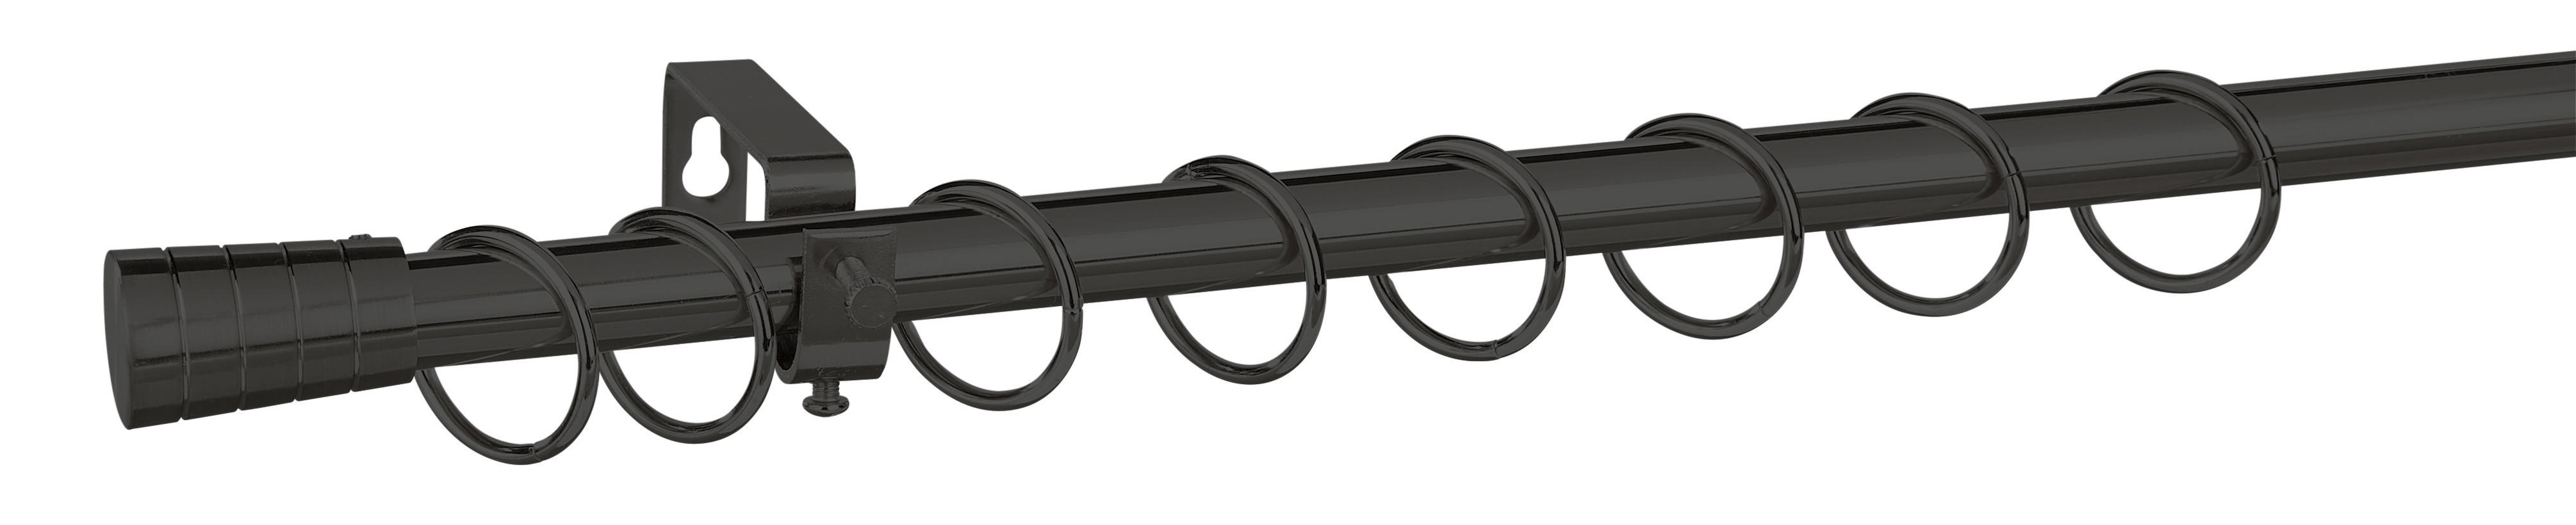 Stilgarnituren schwarz Metall L/D: ca. 130x1,9 cm ausziehbar von ca. 130 bis 240 cm 1.0 Läufe Stilgarnitur_Kappe_Metall - schwarz (1,90cm)